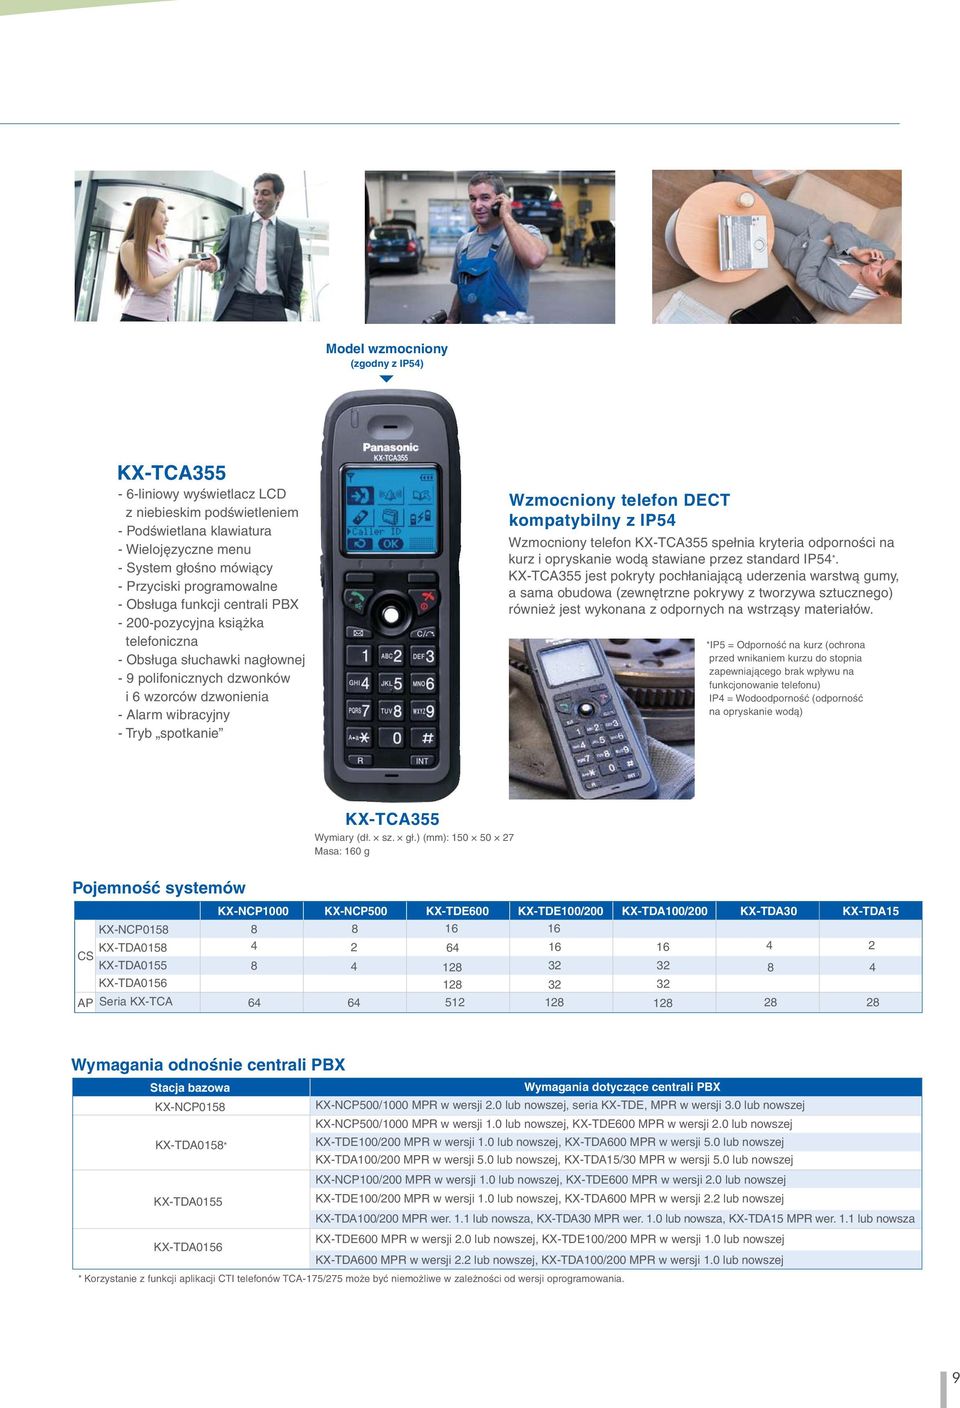 telefon DECT kompatybilny z IP5 Wzmocniony telefon KX-TCA355 spełnia kryteria odporności na kurz i opryskanie wodą stawiane przez standard IP5*.